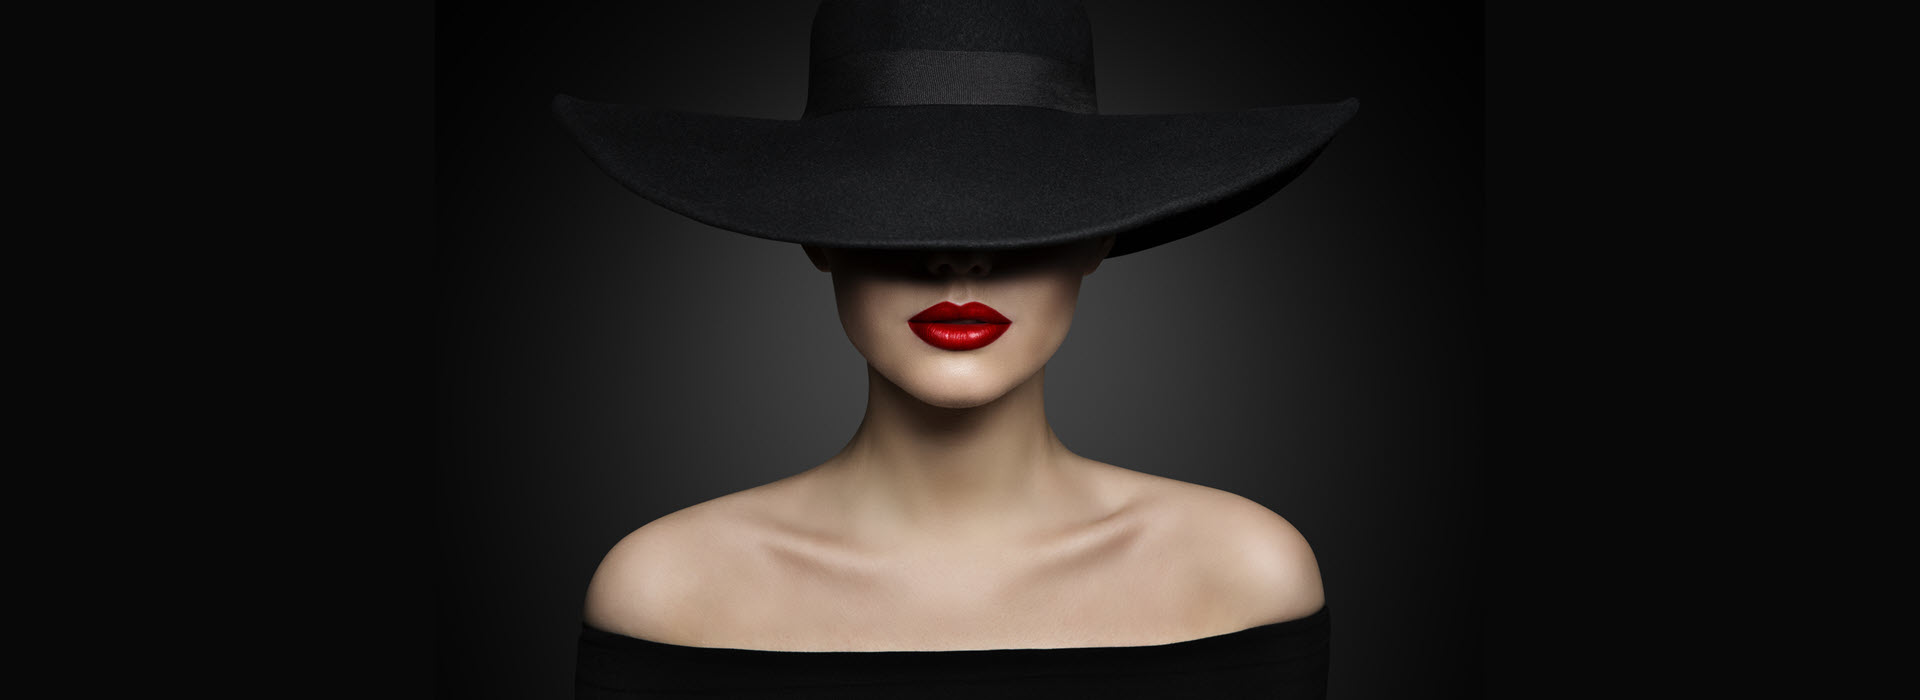 פיגמנטציה, אישה עם כובע שחור